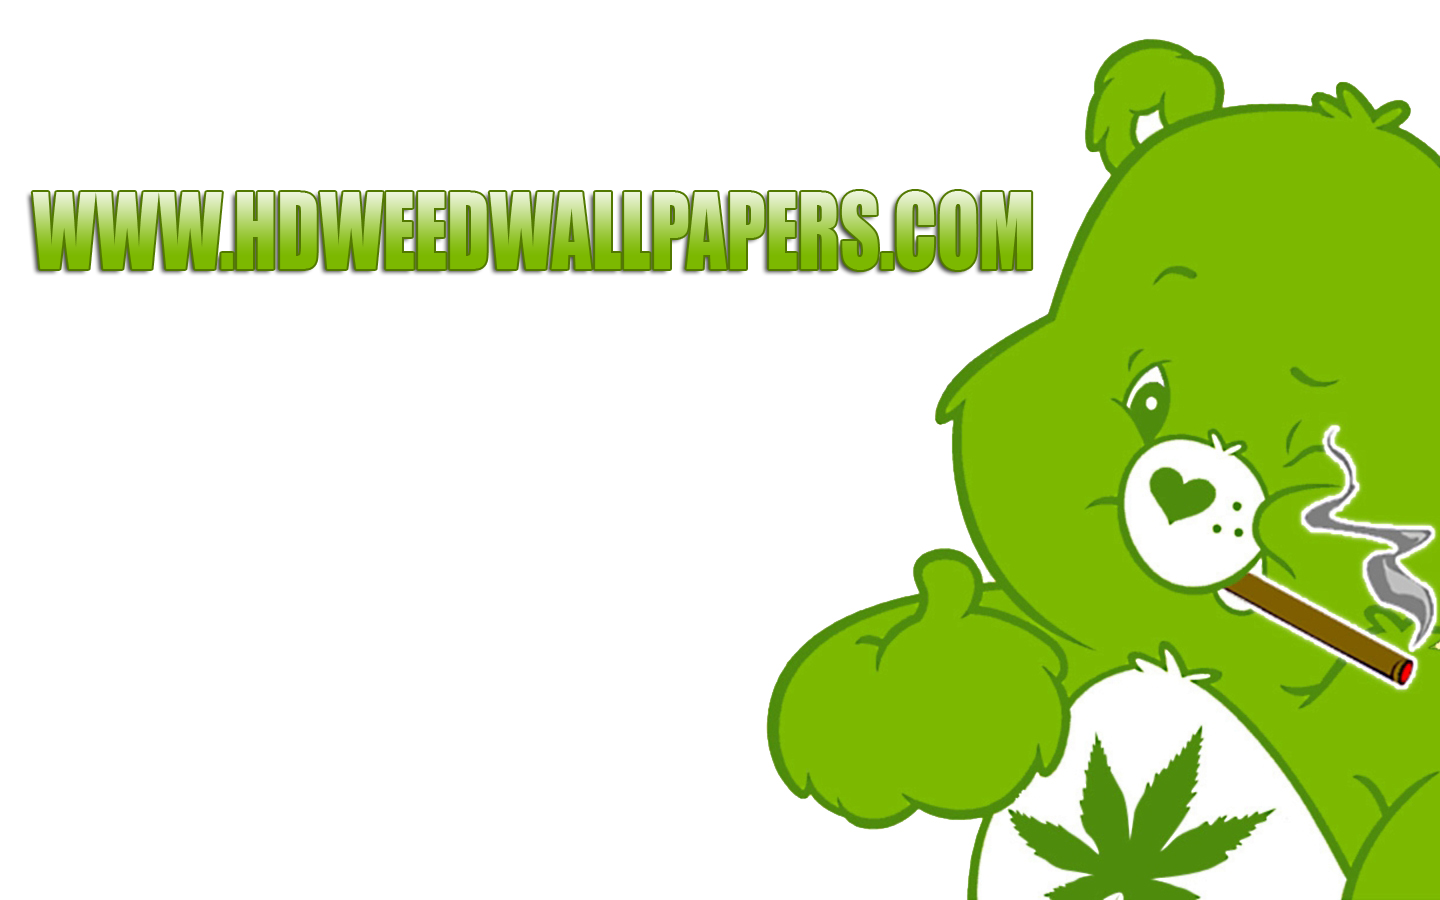 HDweedwallpaper Great Weed Wallpaper Site Weedpad